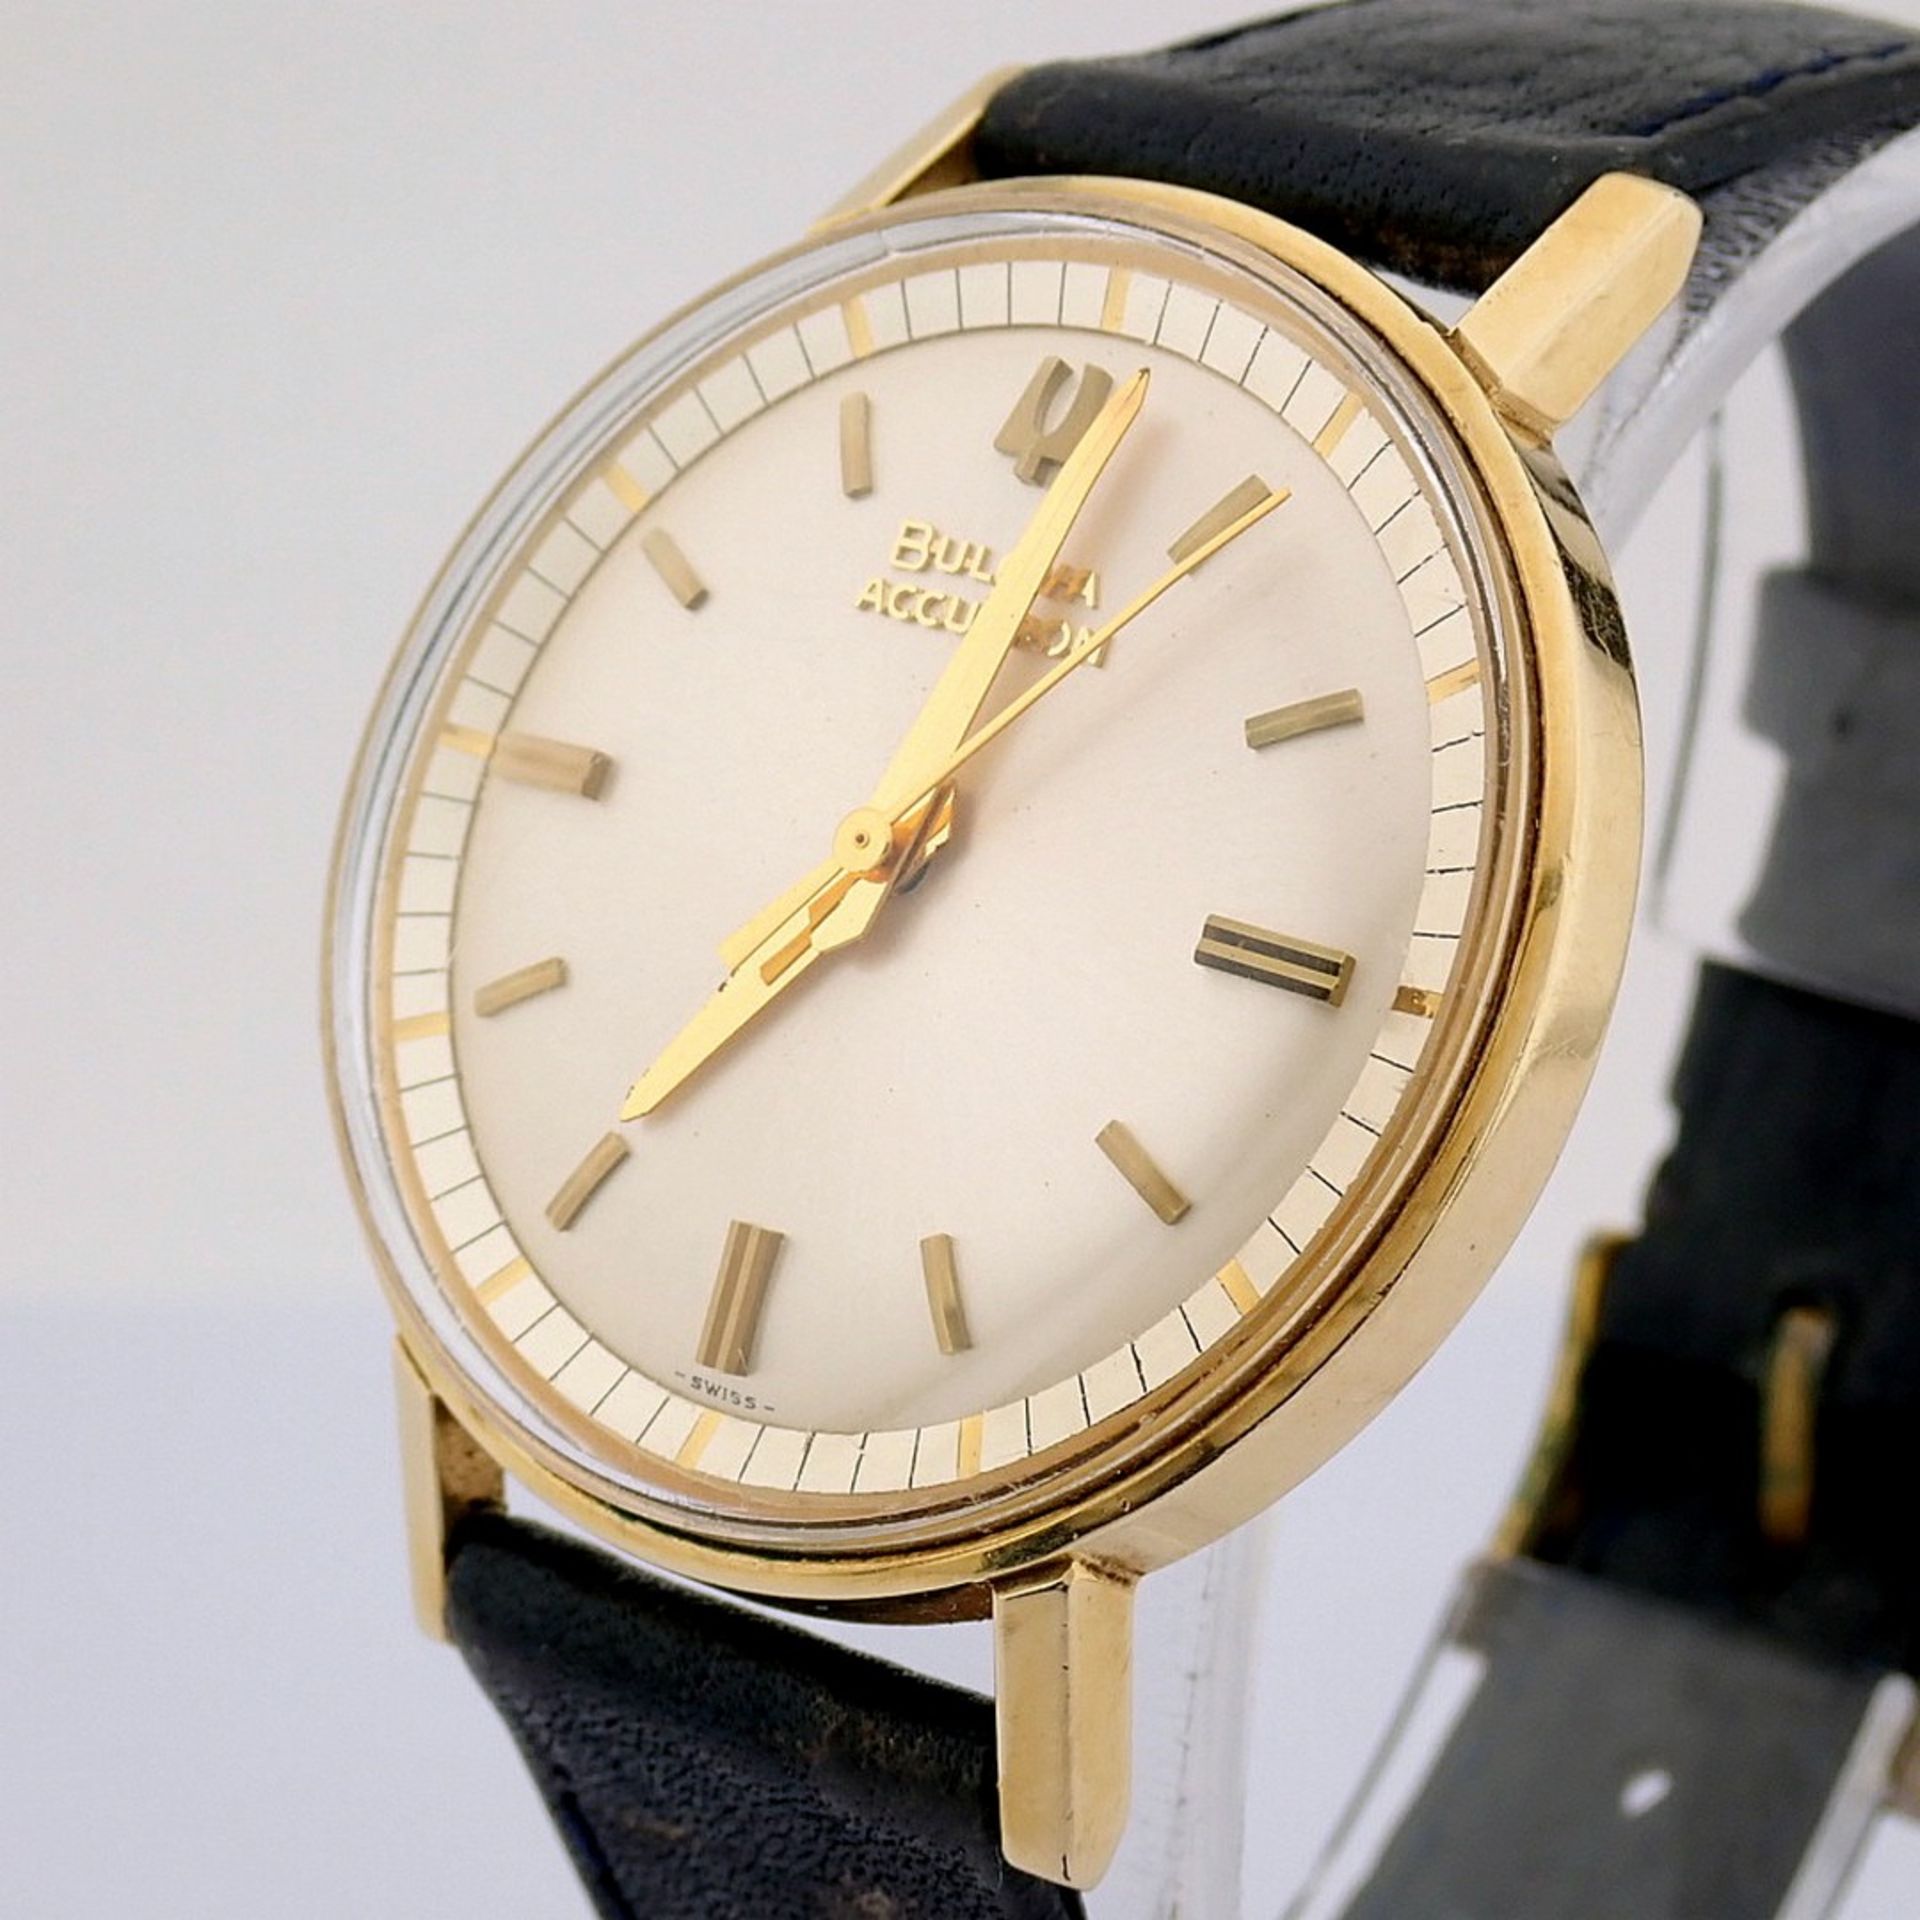 Bulova / Accutron - Vintage - Gentlemen's Steel Wrist Watch - Image 4 of 9